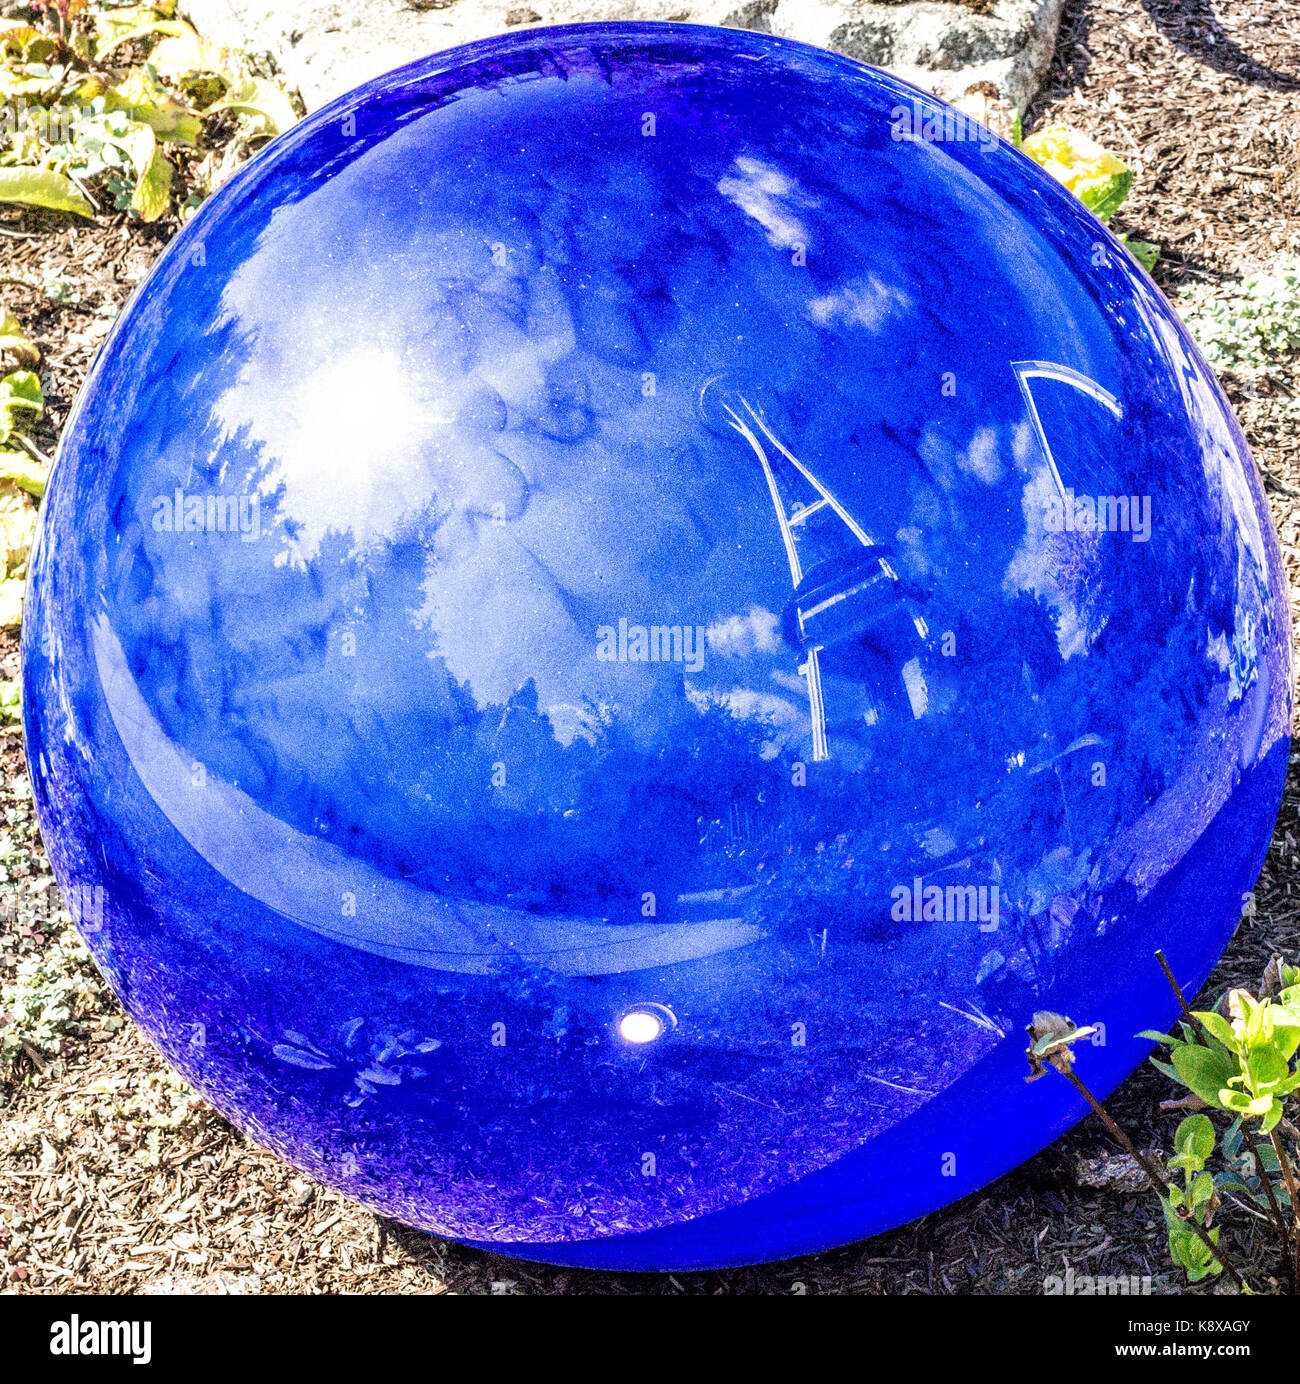 Space Needle reflet dans un globe de verre bleu au 'chihuly glass museum et jardin' à Seattle, Washington. Banque D'Images